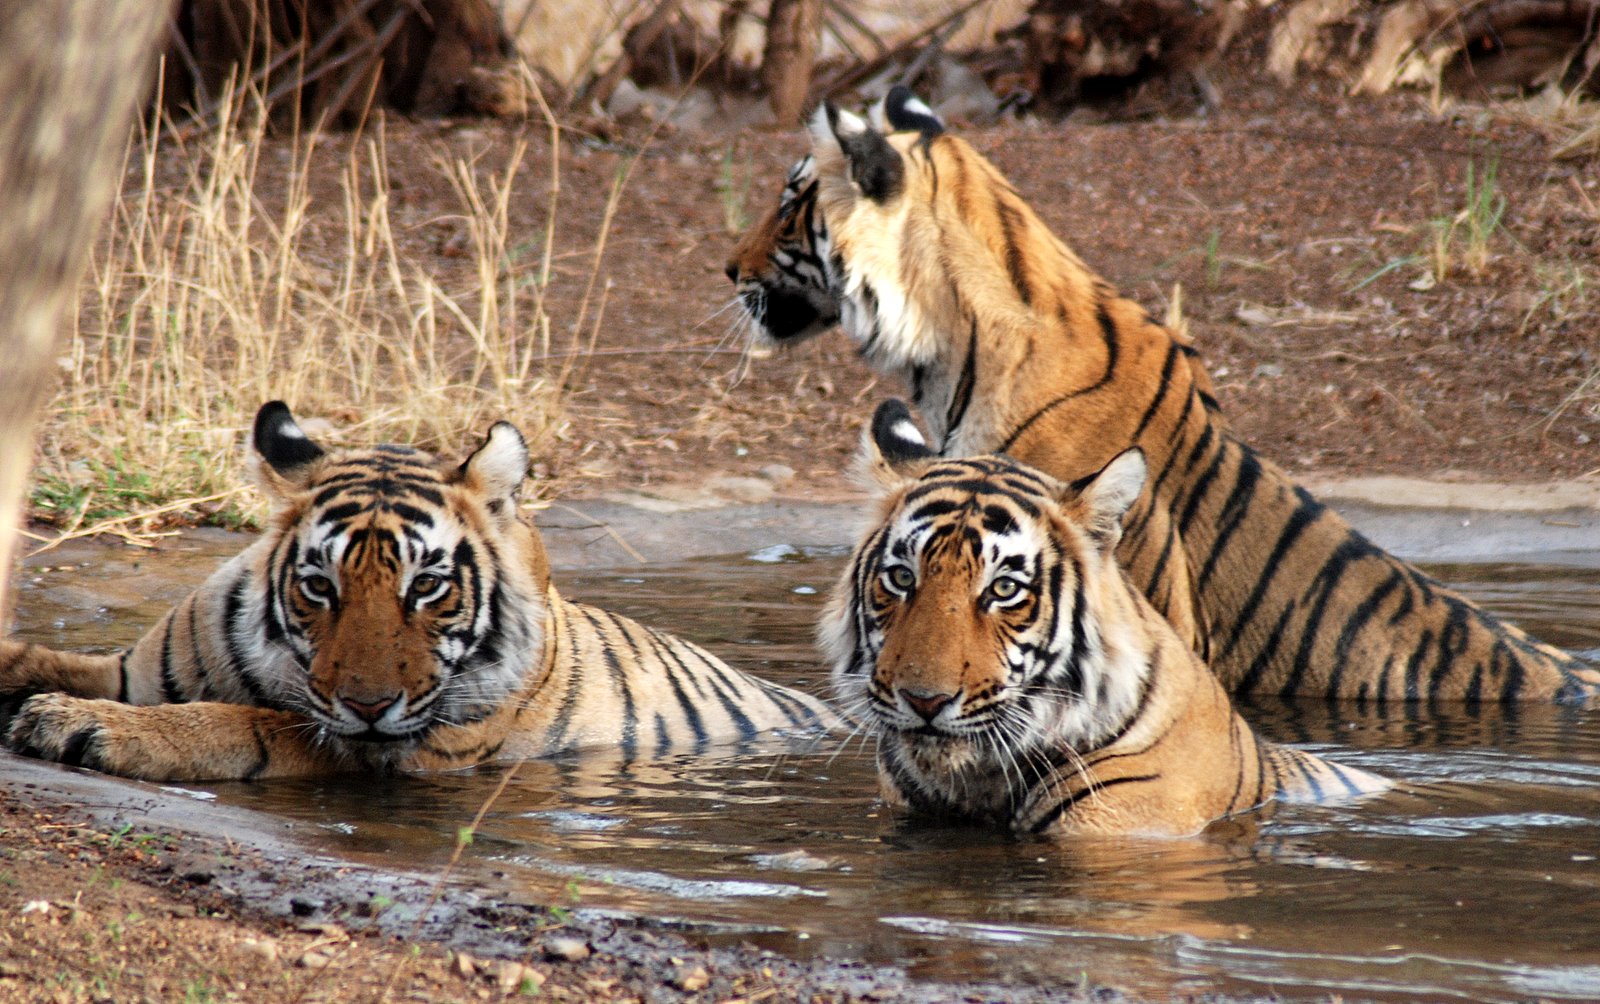 Sunderbans National Park & Tiger Reserve